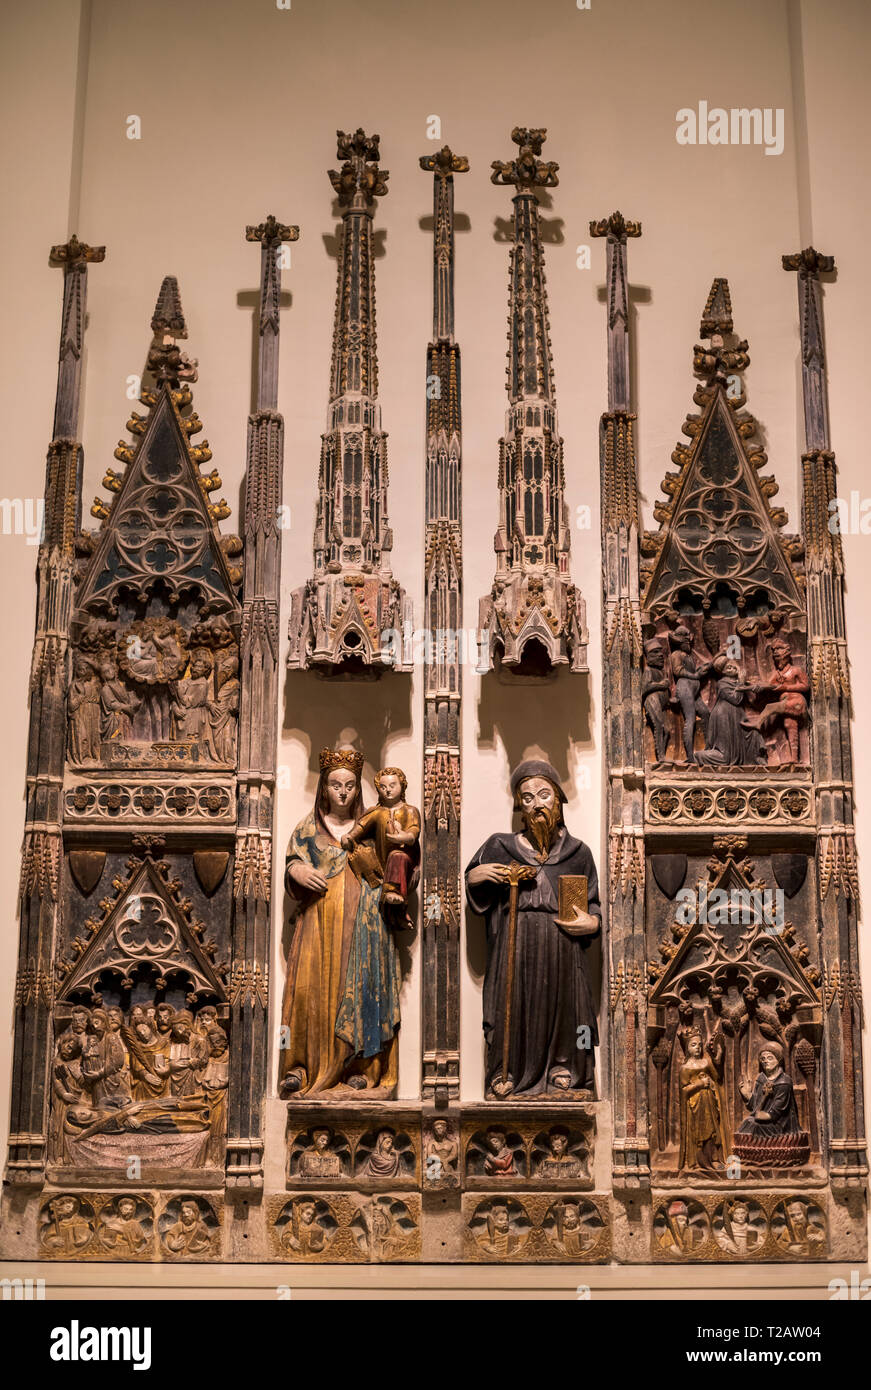 L'art gothique médiévale dans le Musée National d'Art de Catalogne,catalan,anonyme retable de la Mère de Dieu et de San Antonio Abad (1378-1398) Banque D'Images